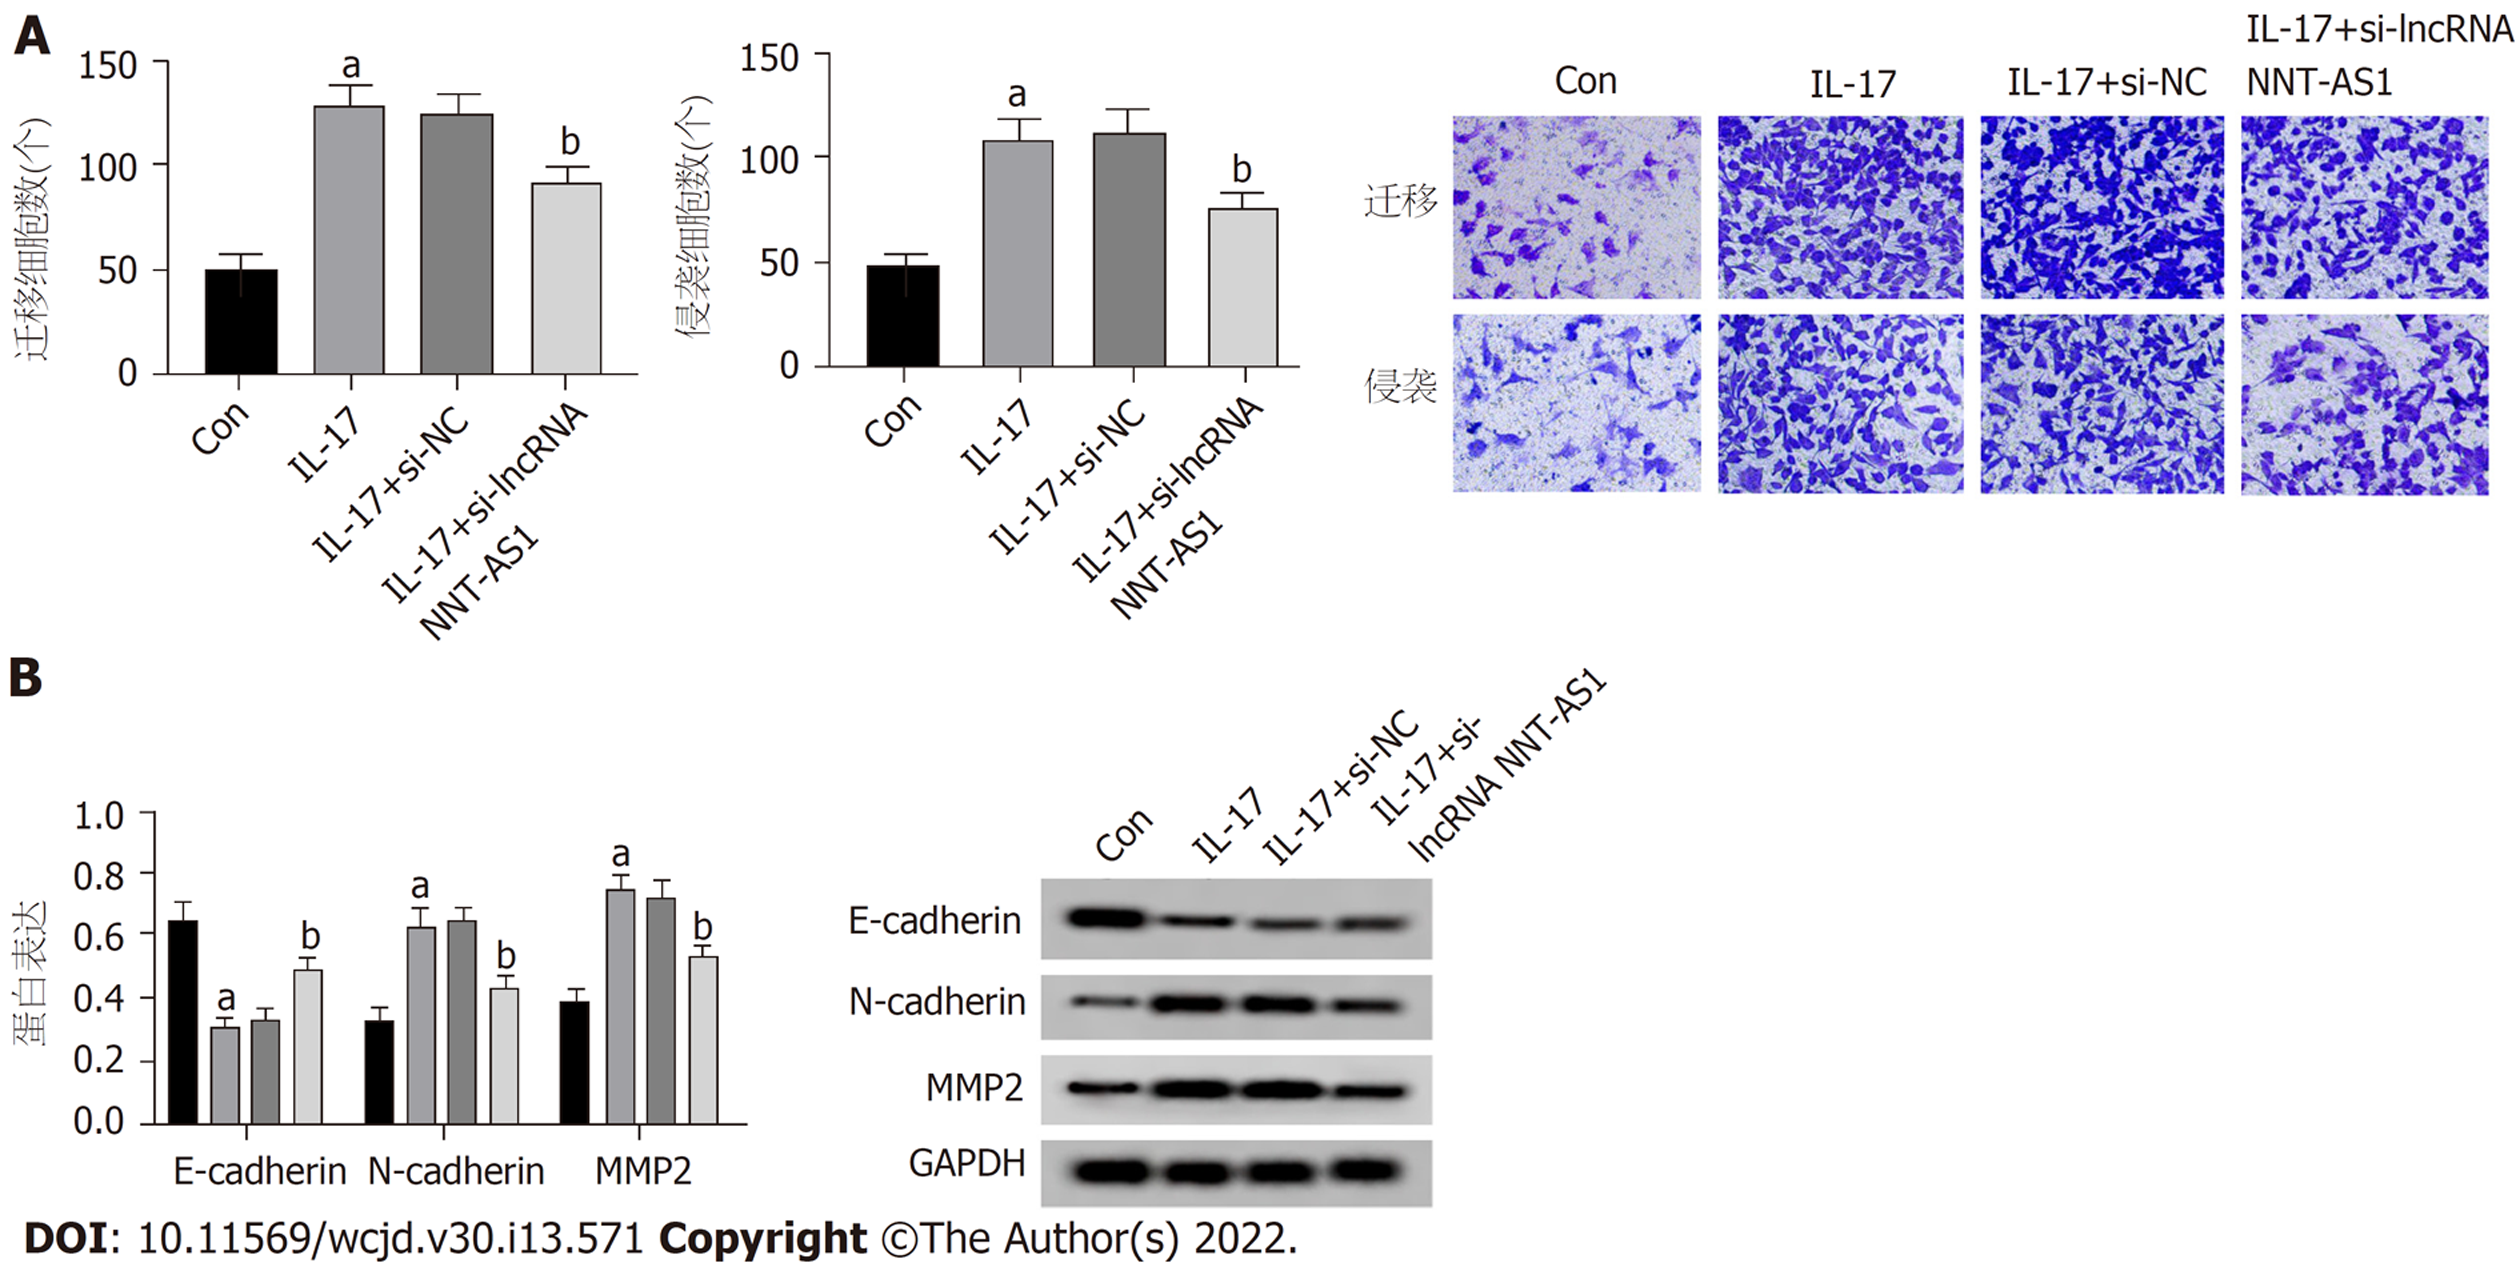 lncRNA NNT-AS1调控miR-518a-3p抑制IL-17诱导胃癌细胞增殖、迁移和侵袭 